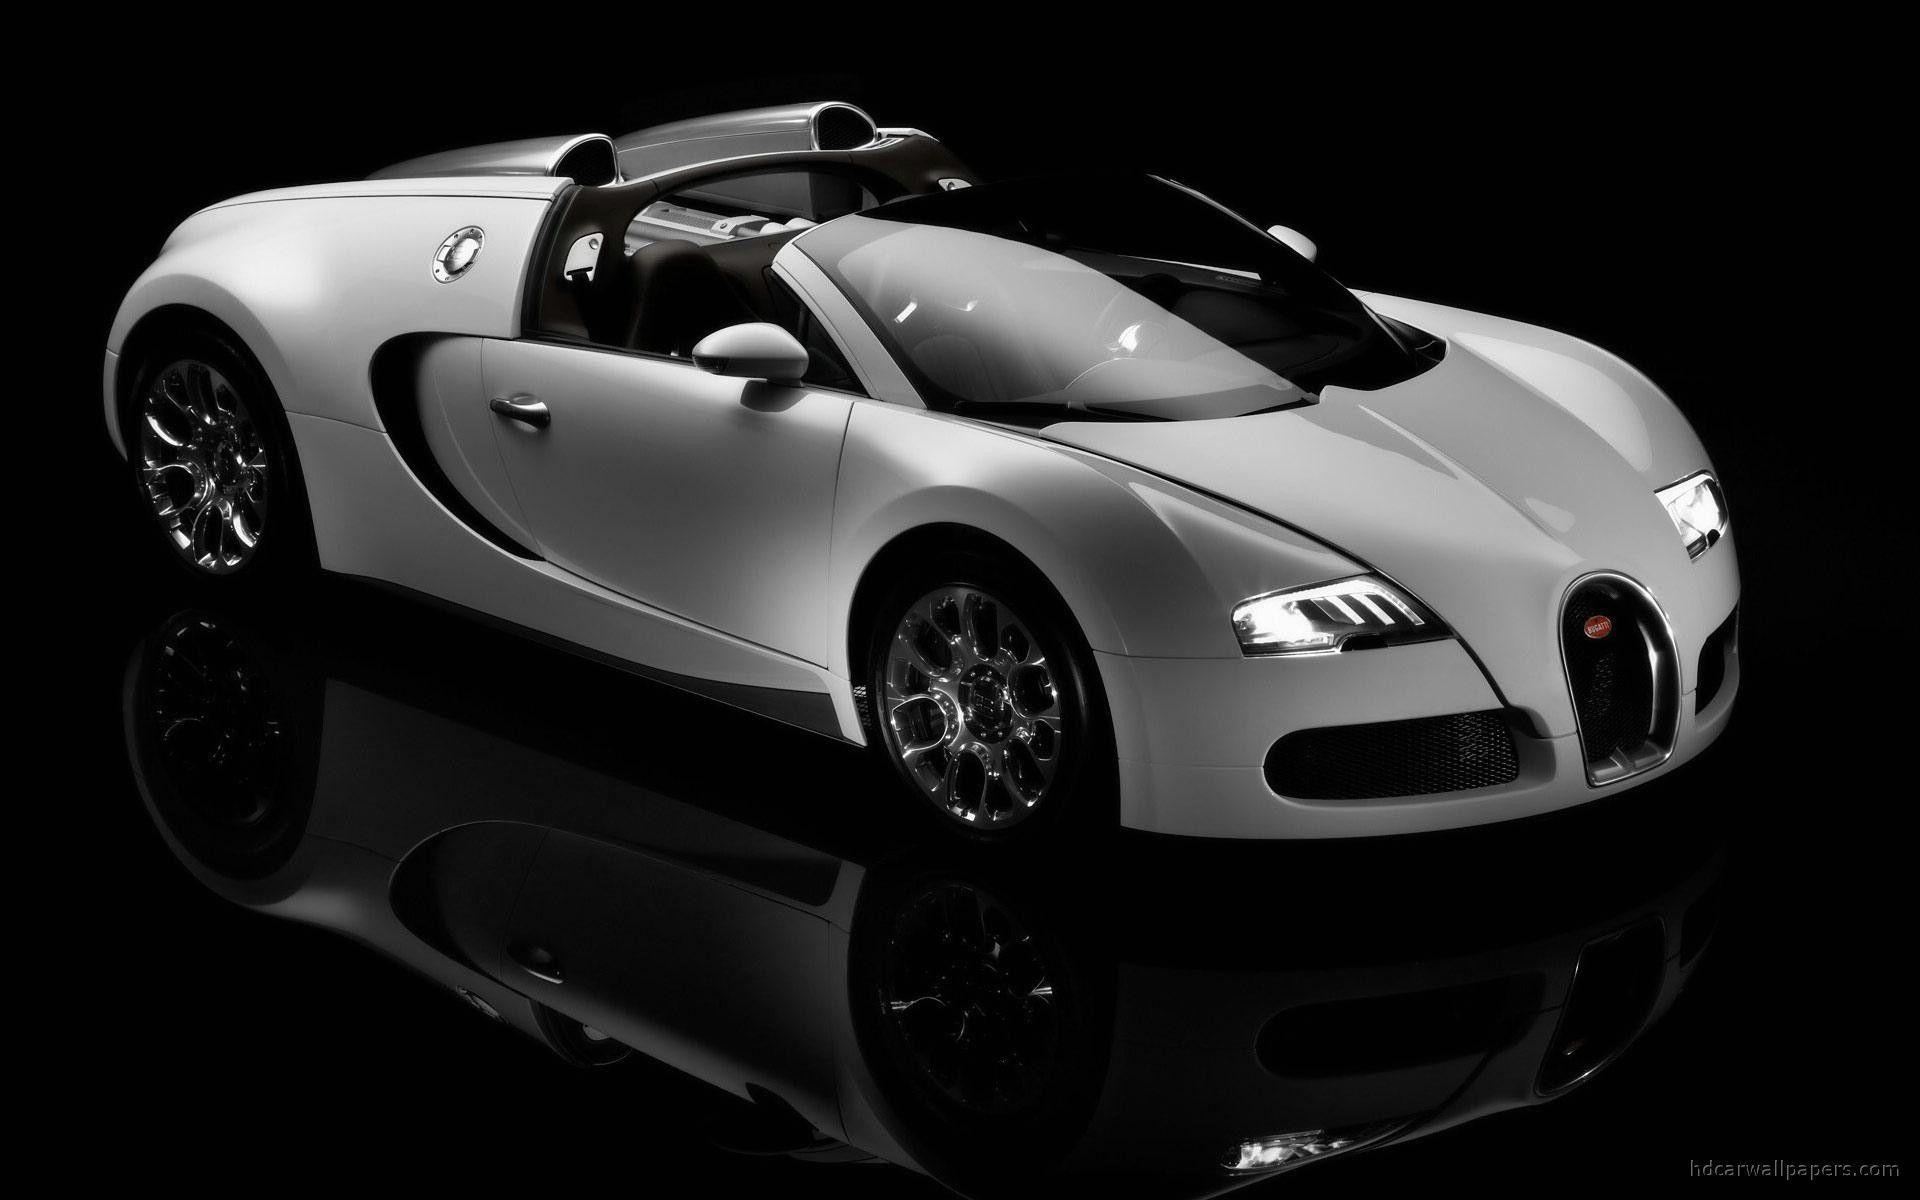 New Bugatti Veyron Wallpapers Hd